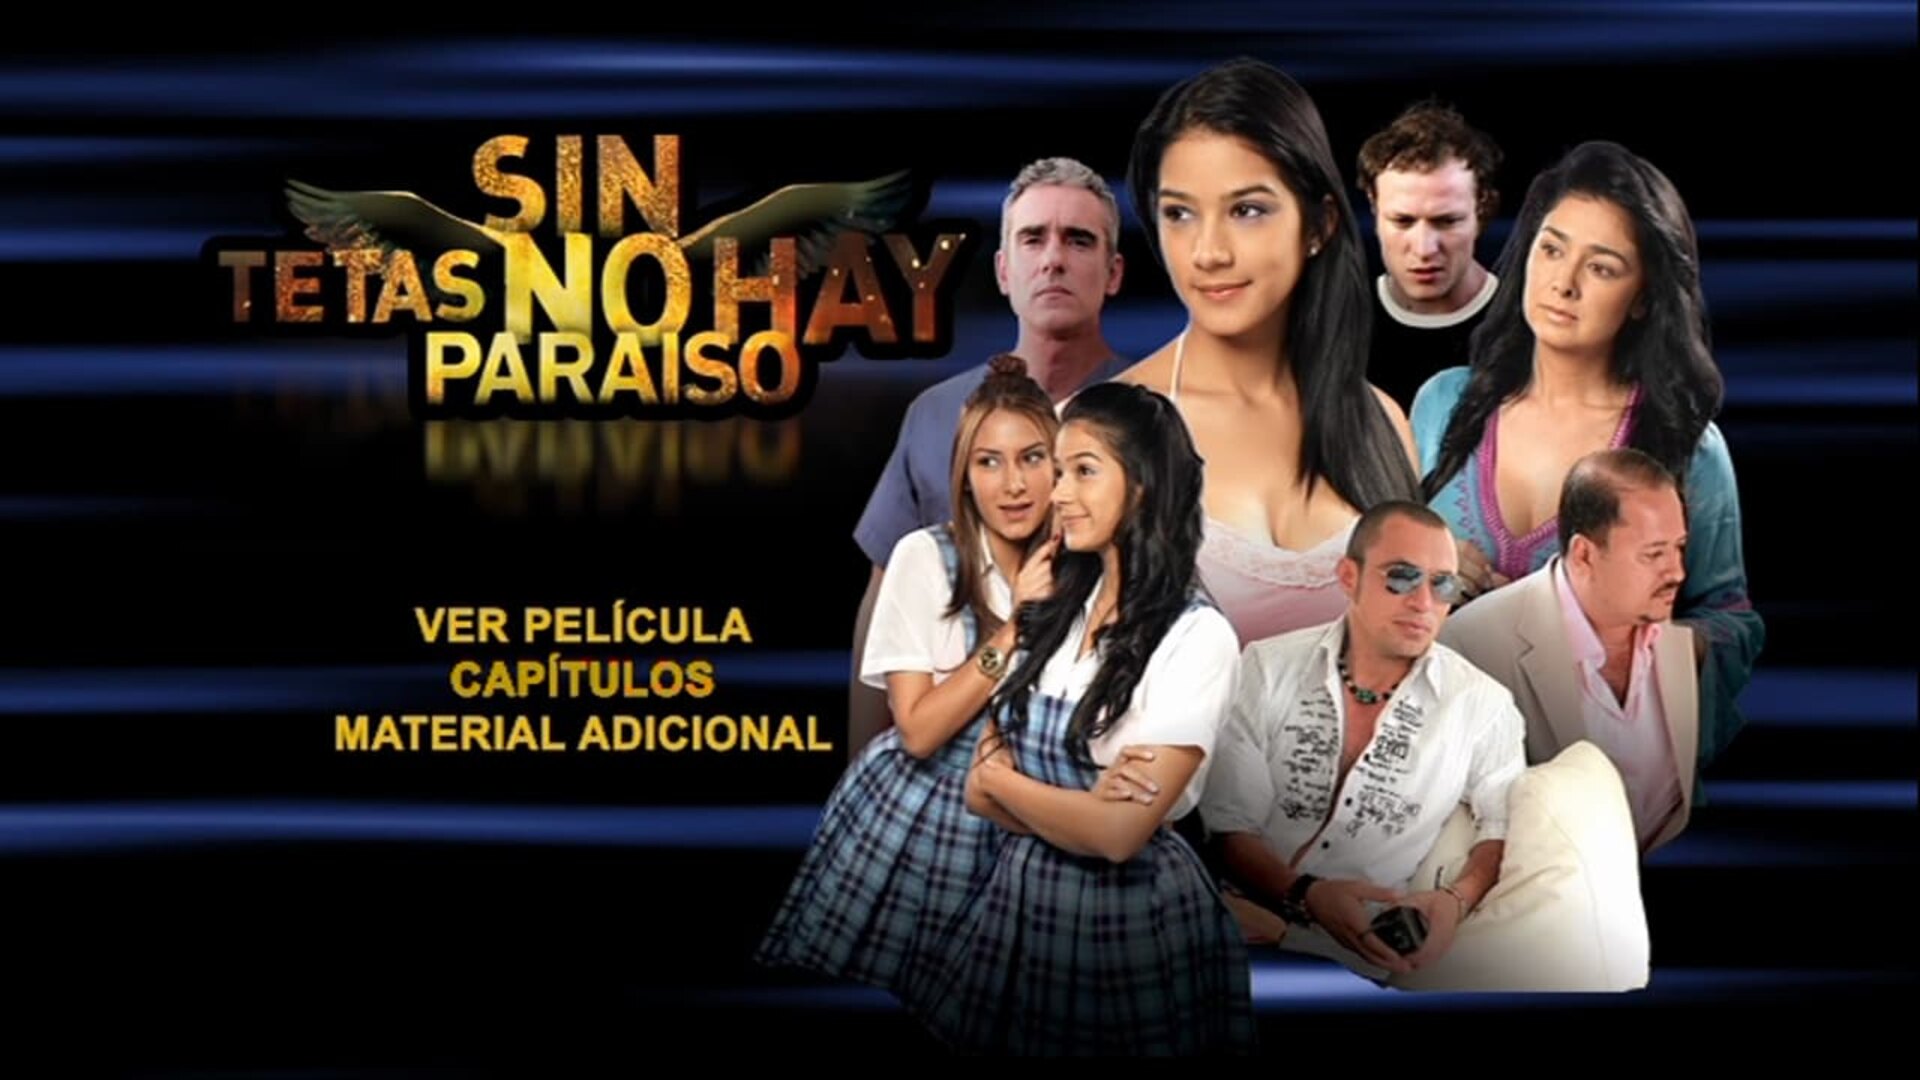 Sin tetas no hay paraíso comments (2010) .